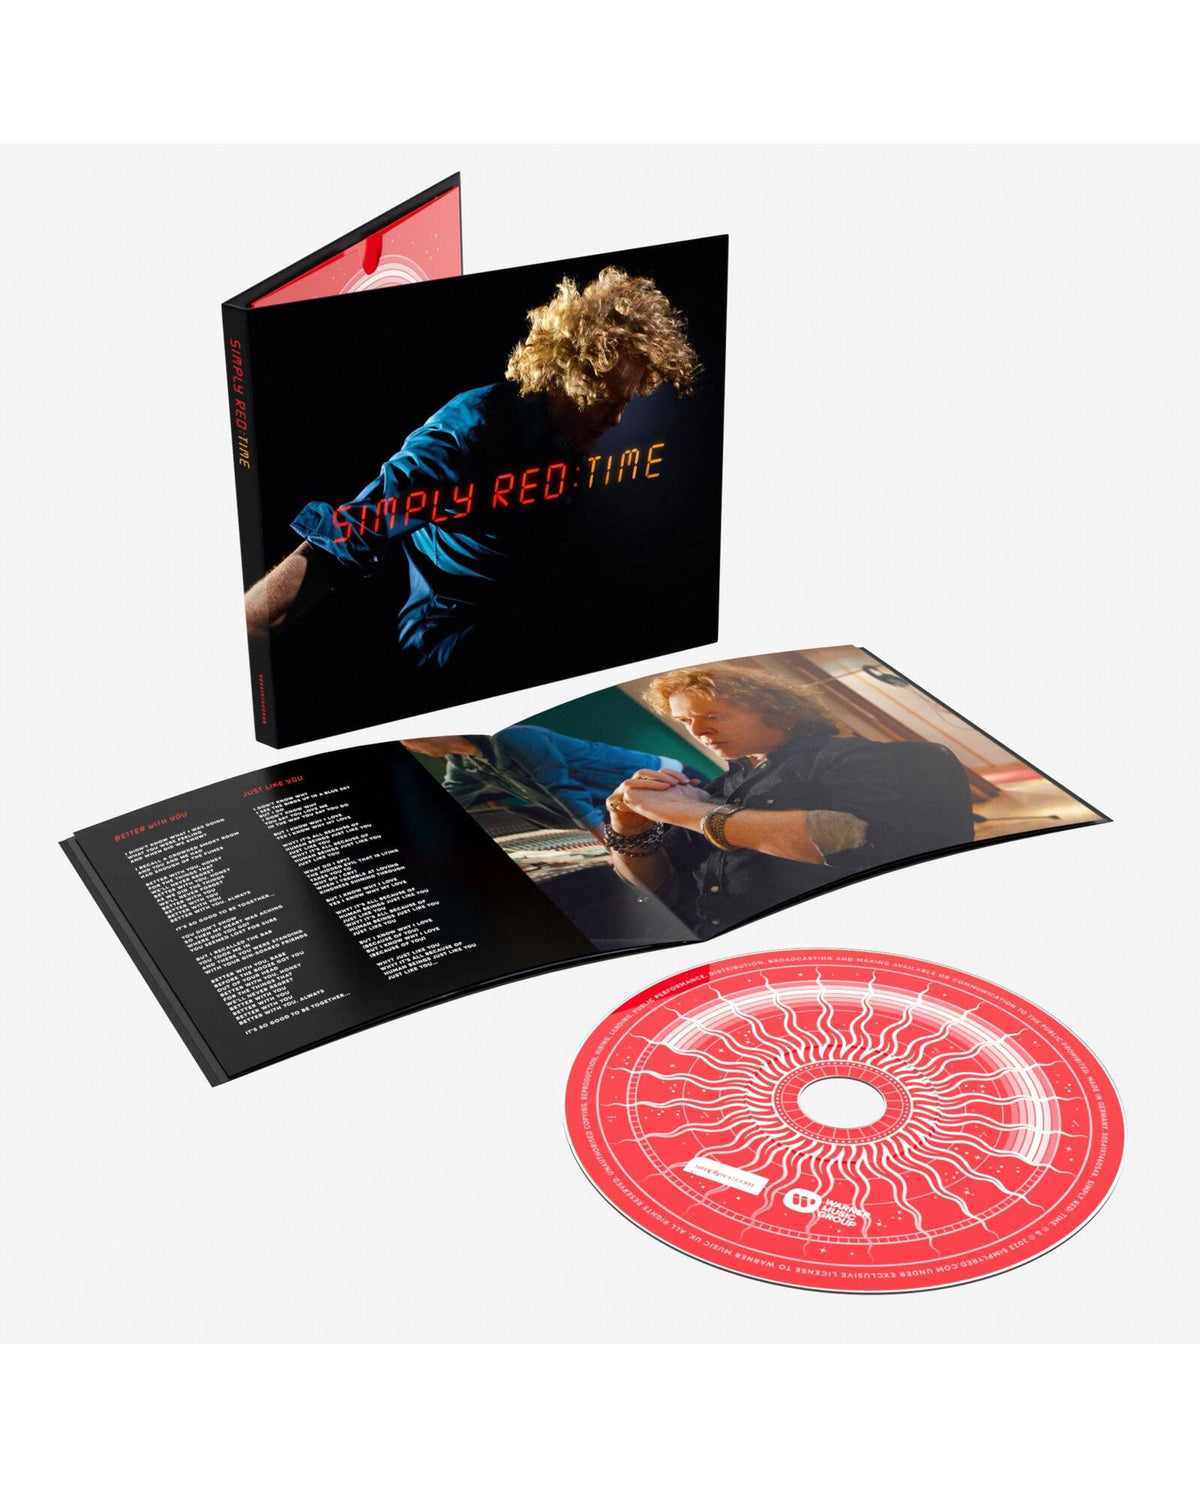 Simply Red - CD Media book "Time" - D2fy · Rocktud - Rocktud